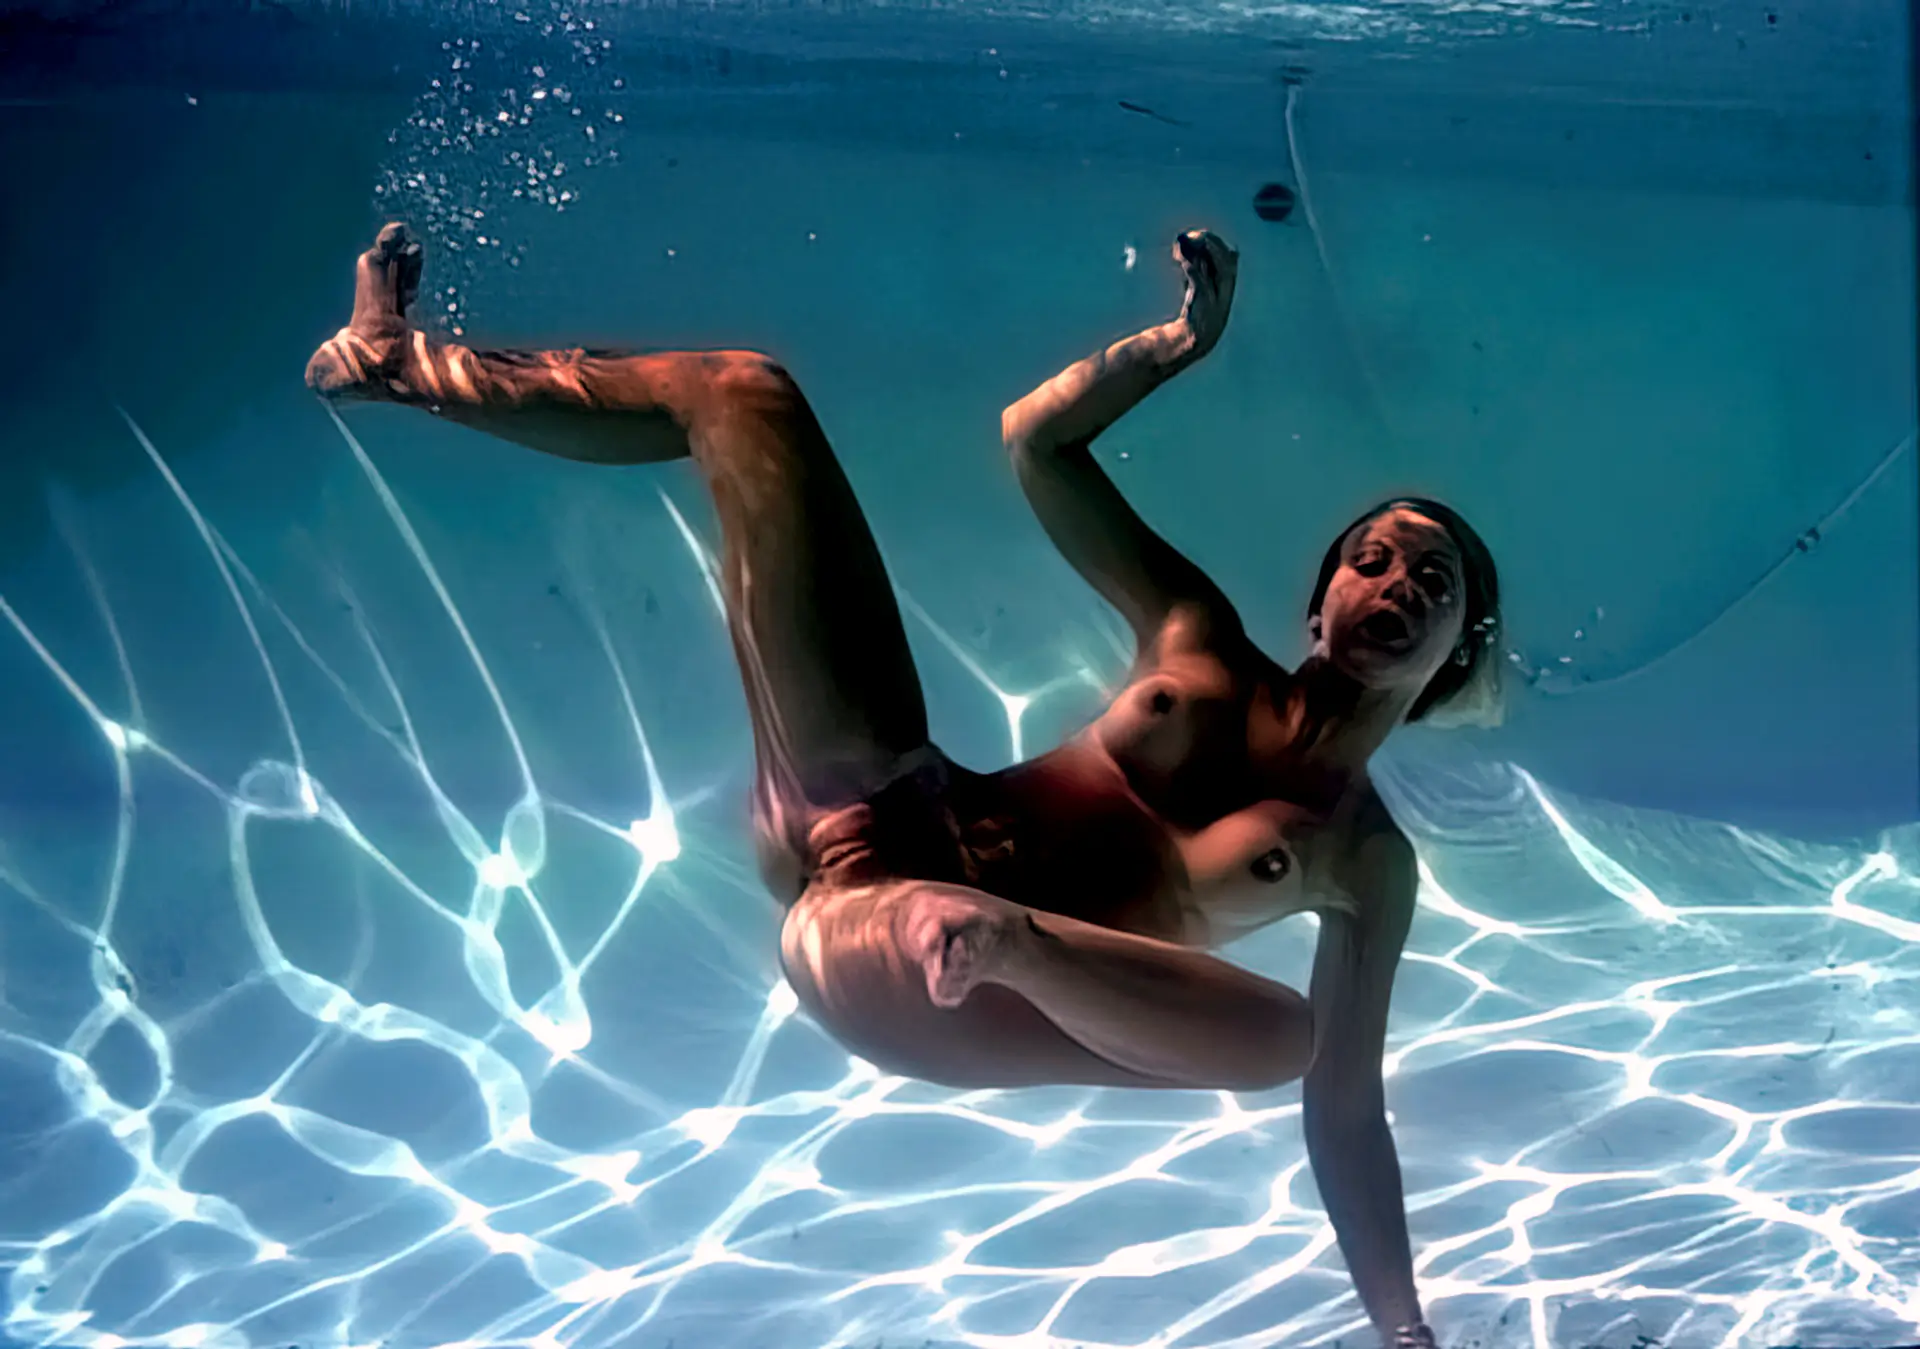 Classic girl skinny dips in her pool bare-naked